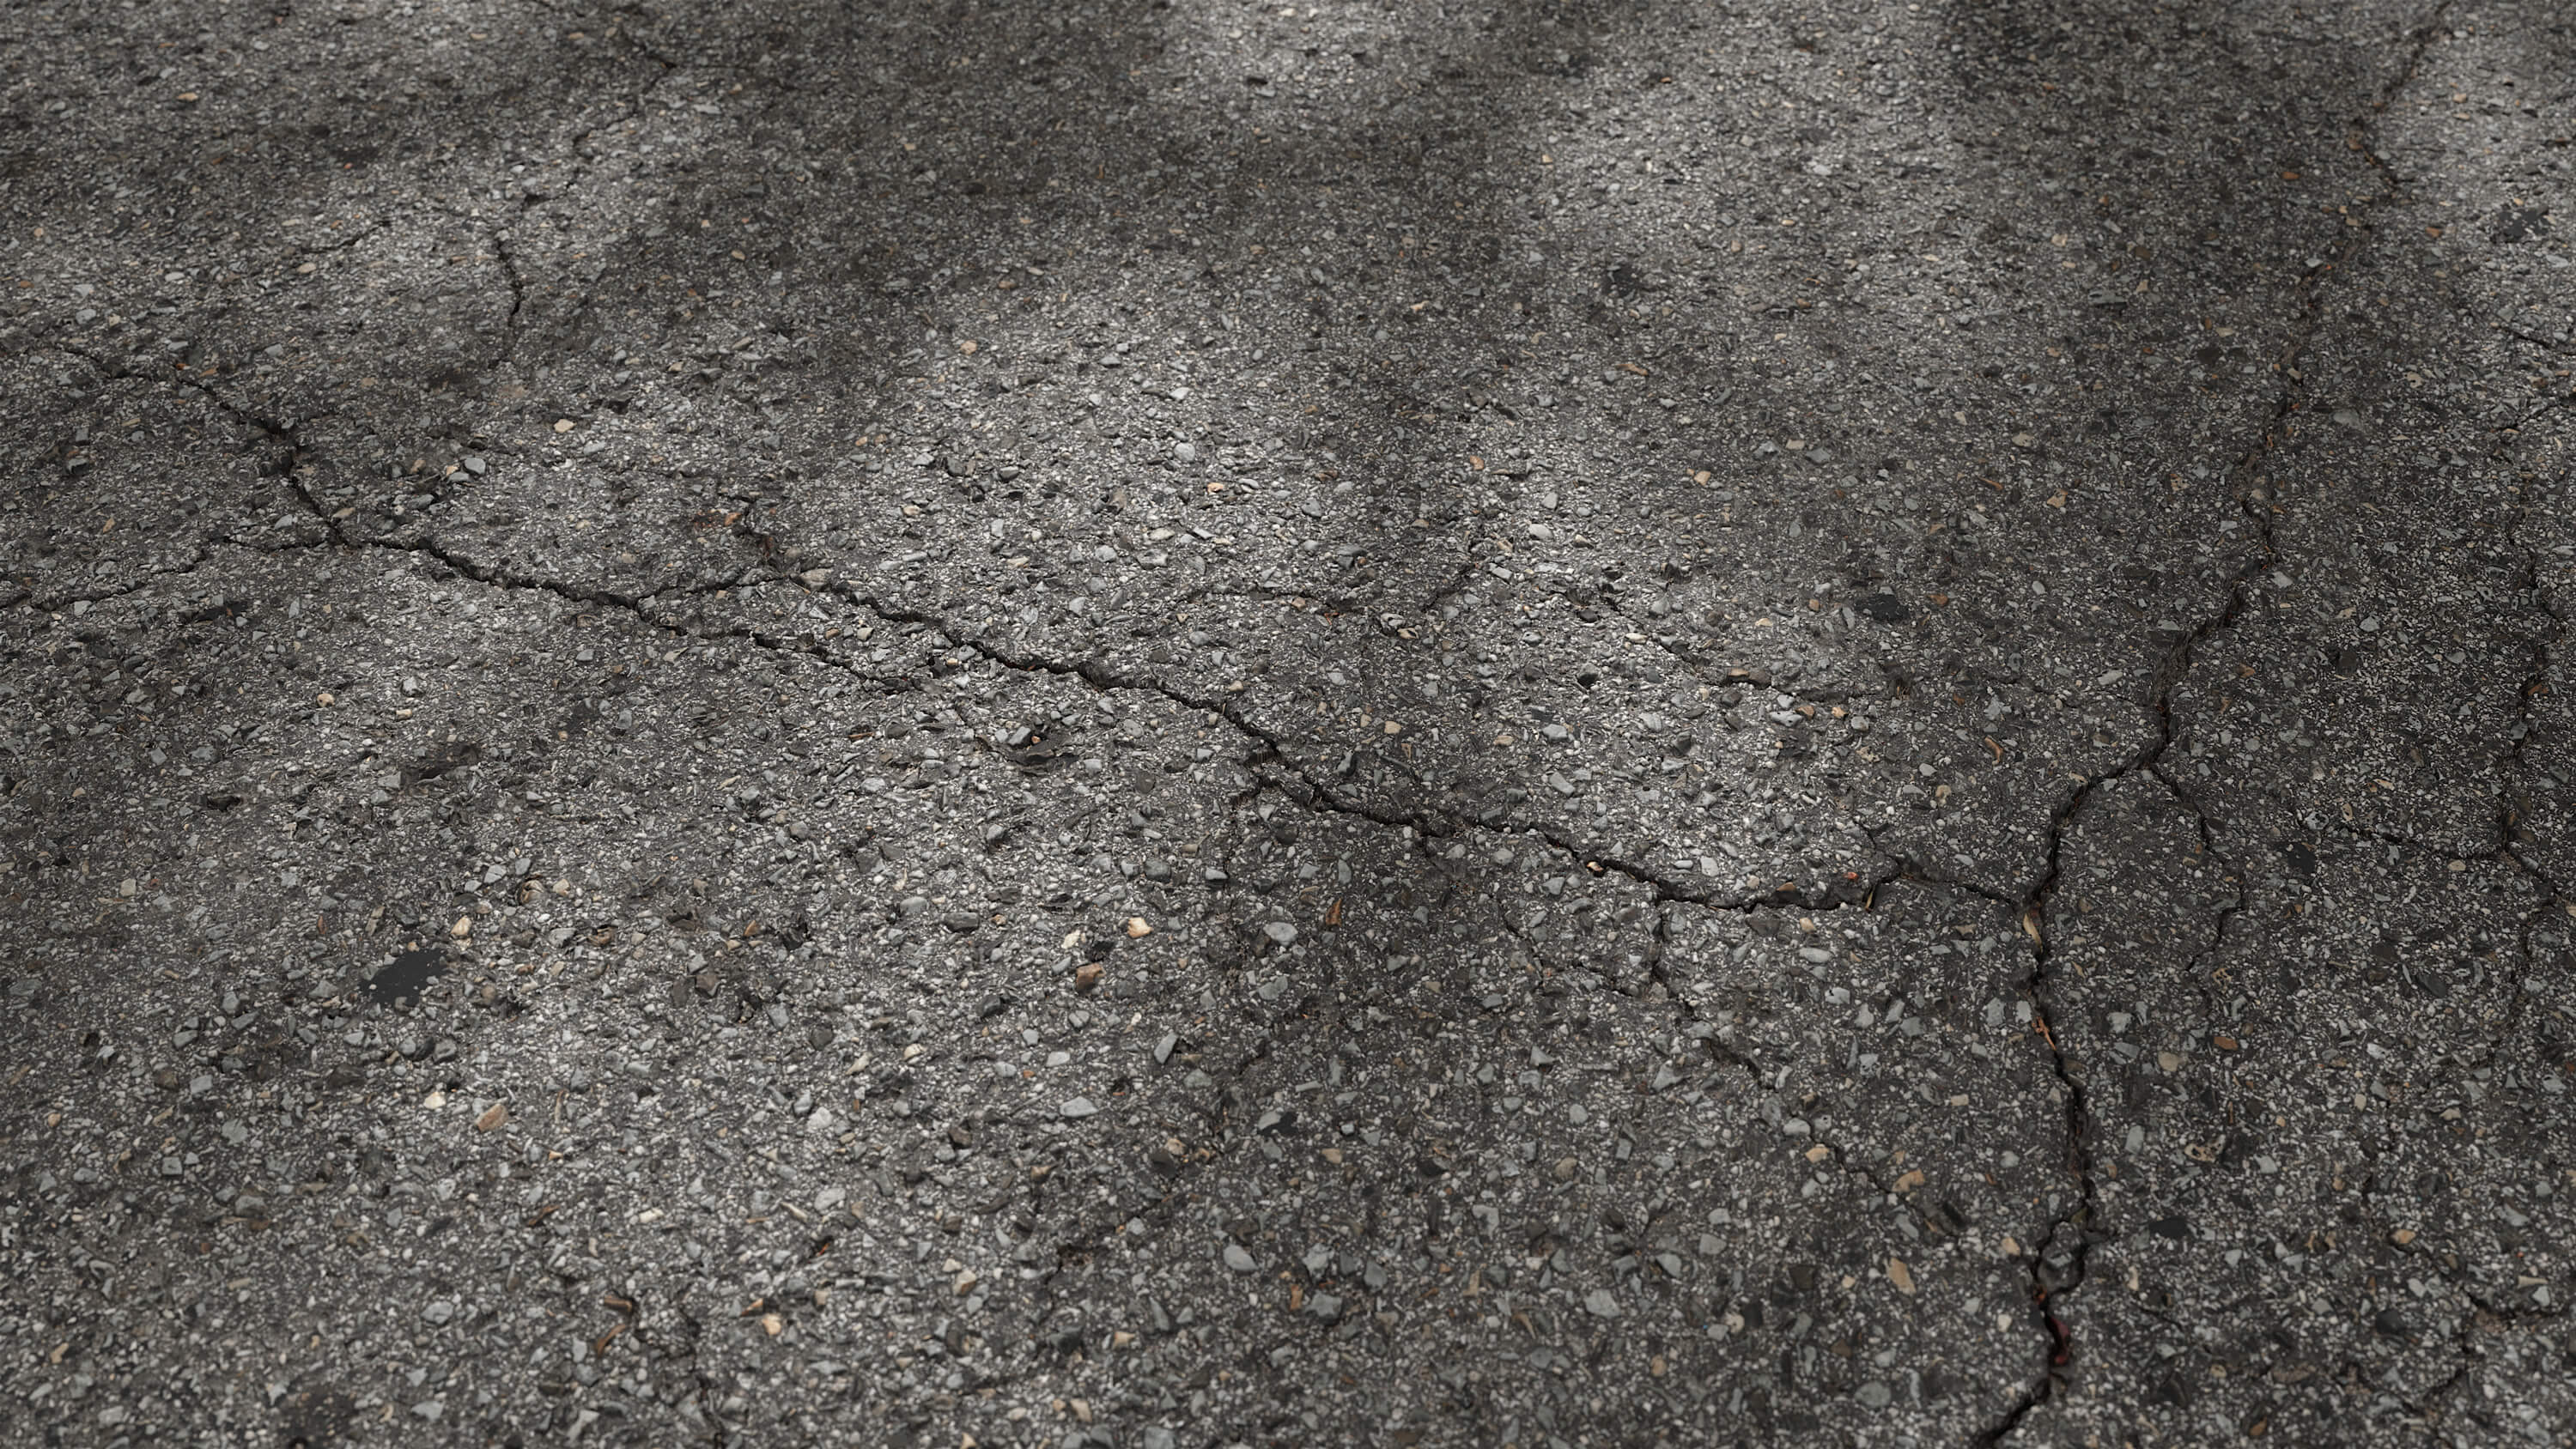 Seamless cracked asphalt texture